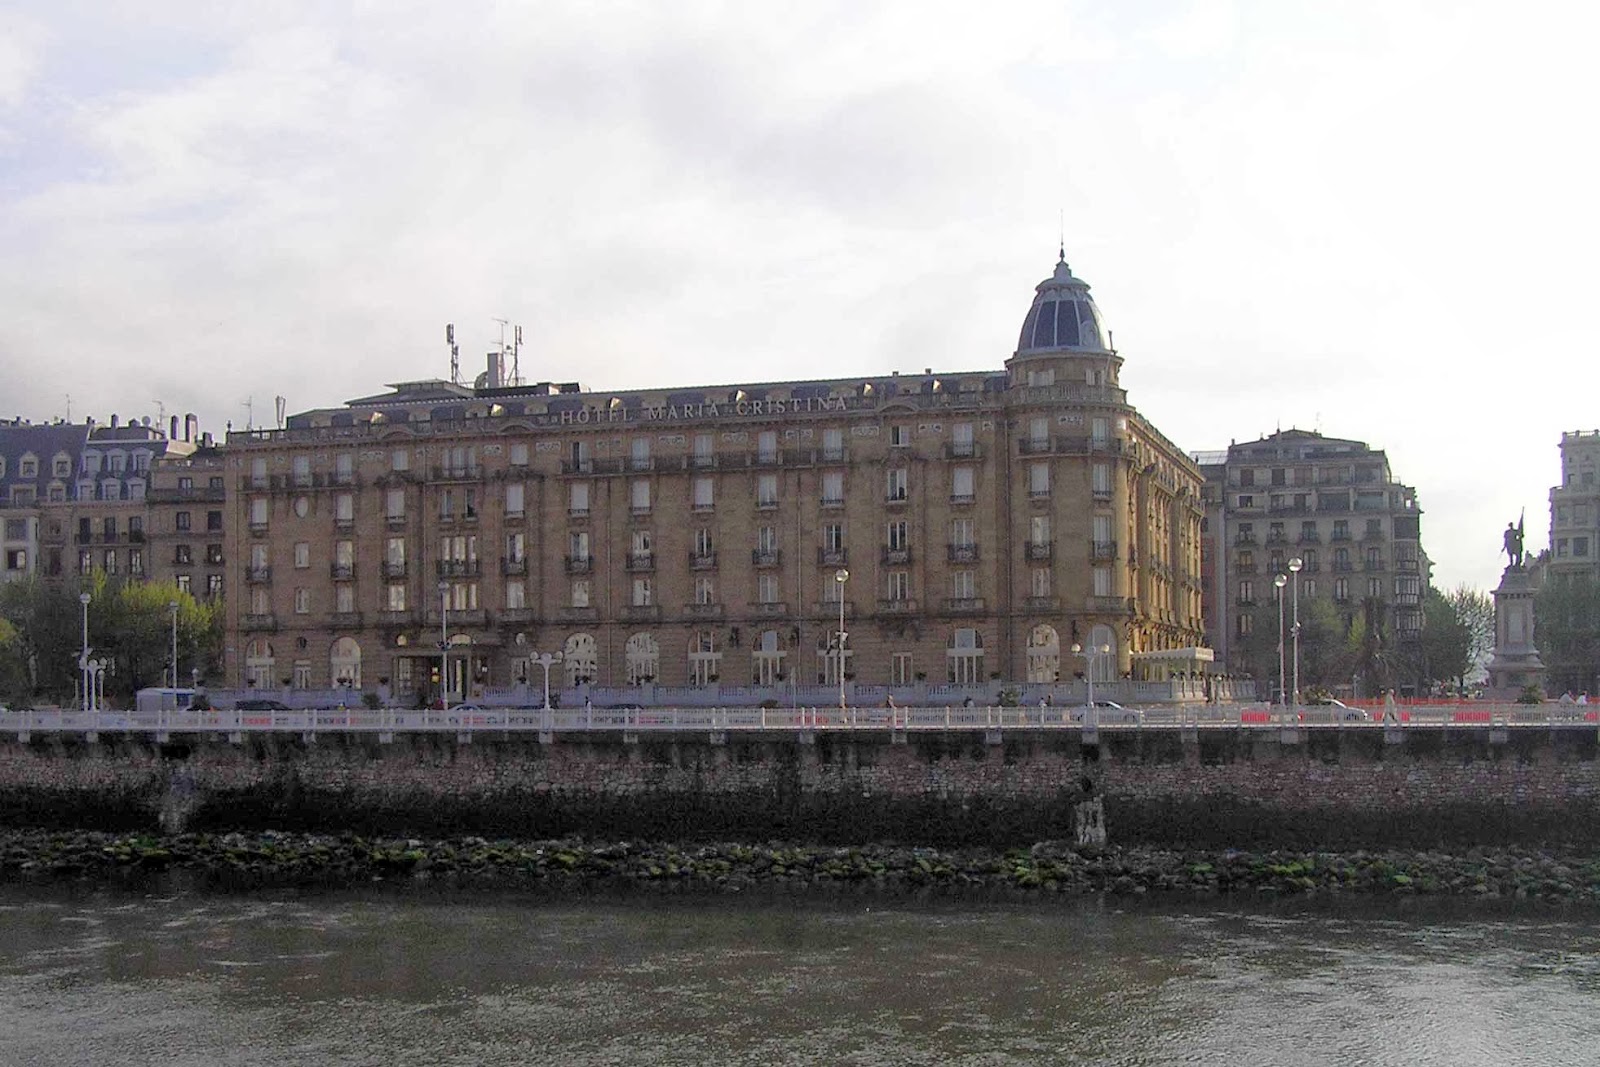 Hotel María Cristina de San Sebastián.